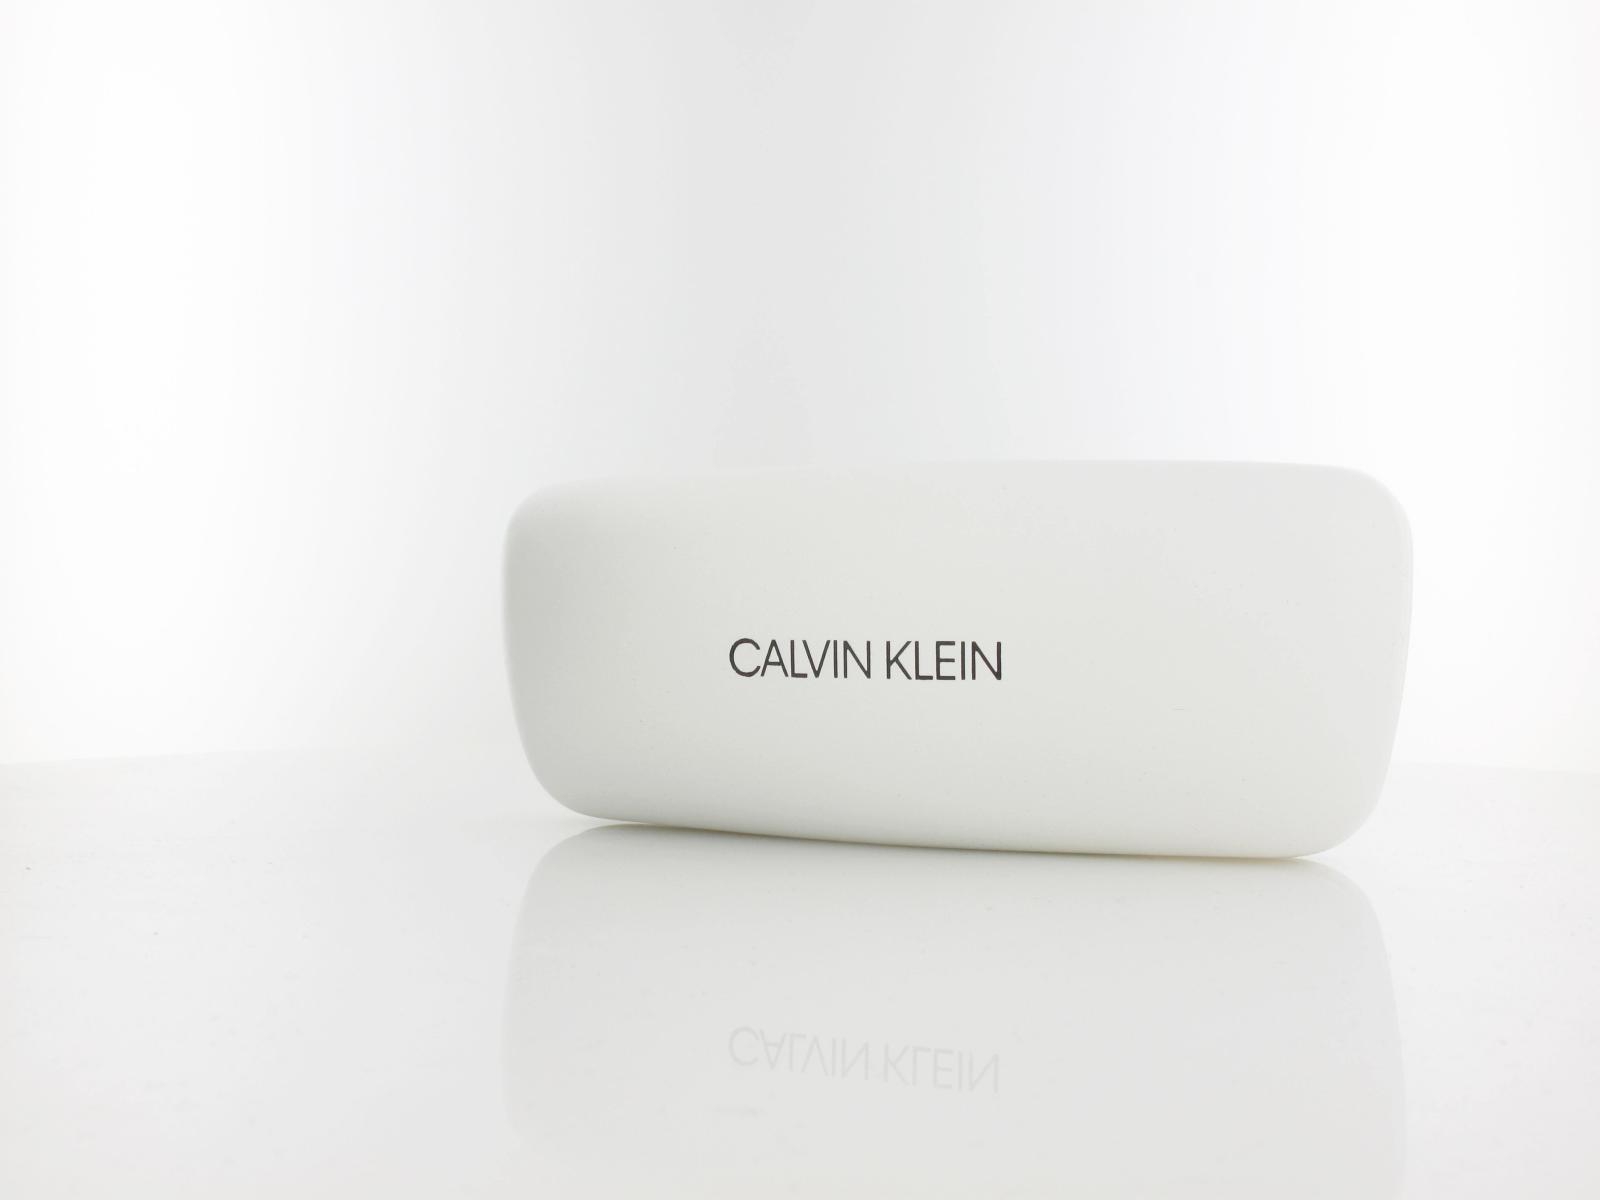 Calvin Klein | CK19712 428 51 | crystal blue green gradient